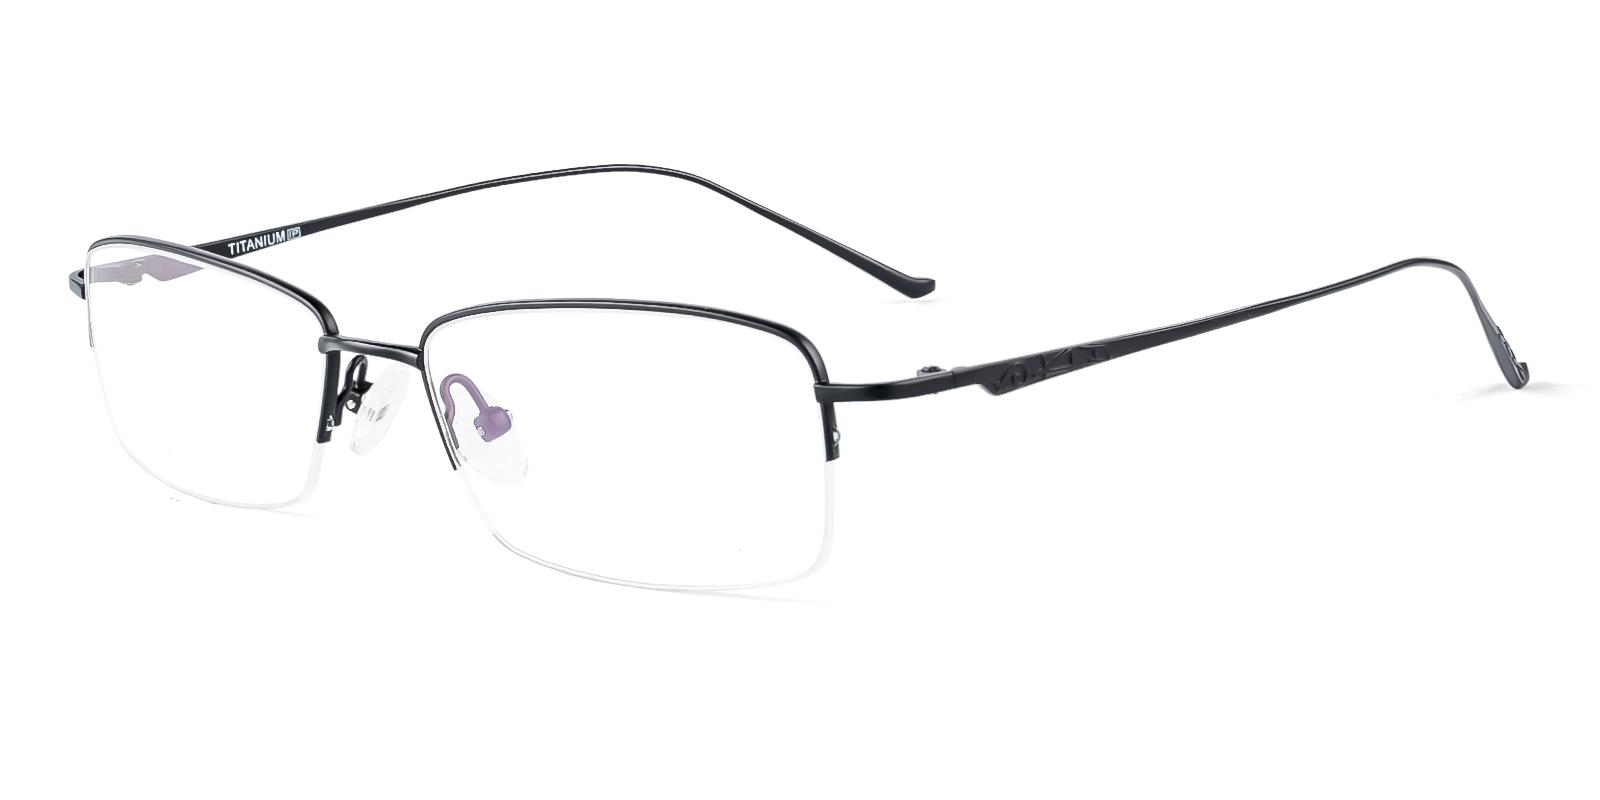 Yesior Black Titanium Eyeglasses , NosePads Frames from ABBE Glasses